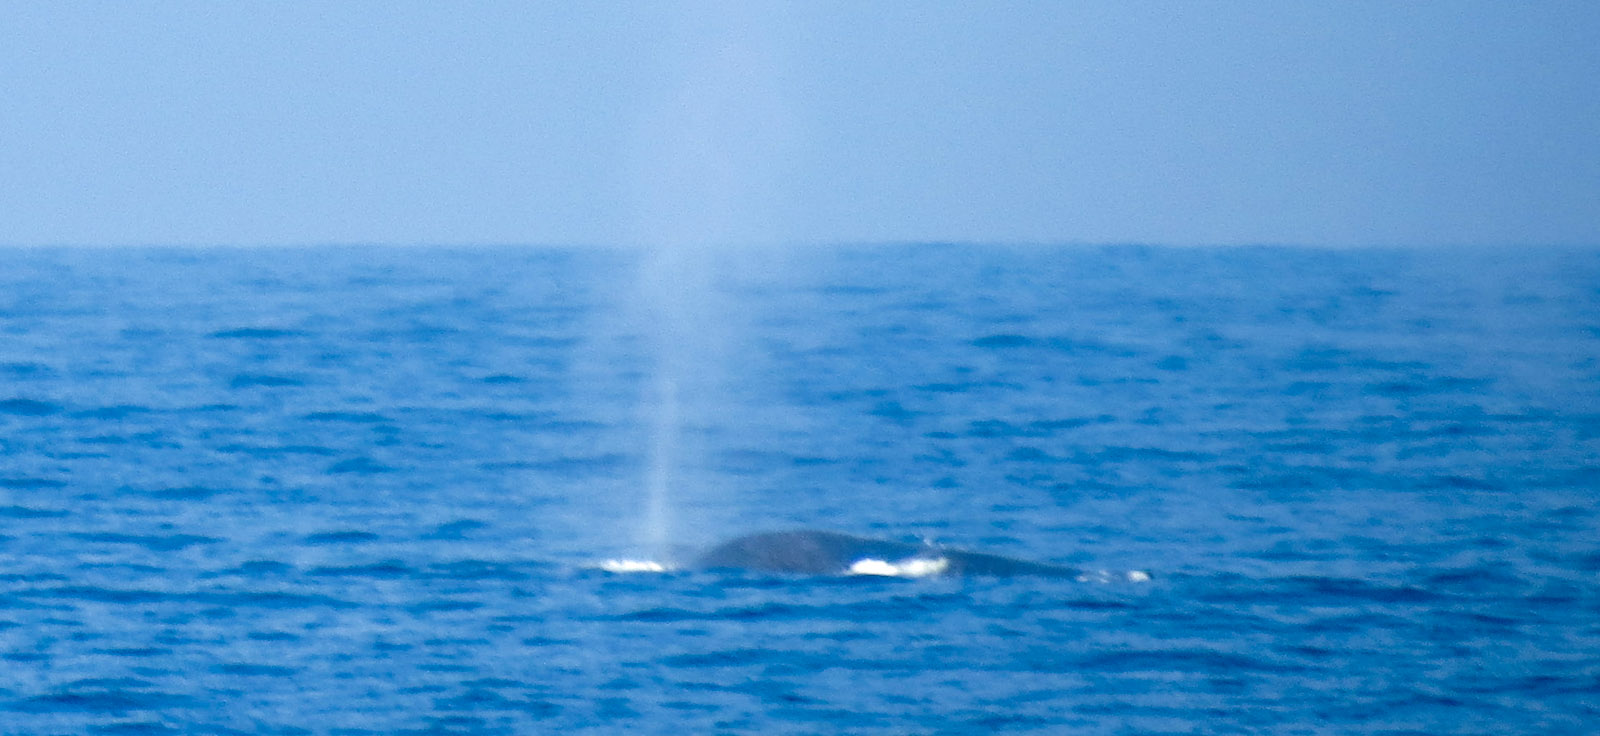 mirissa-whale-blows